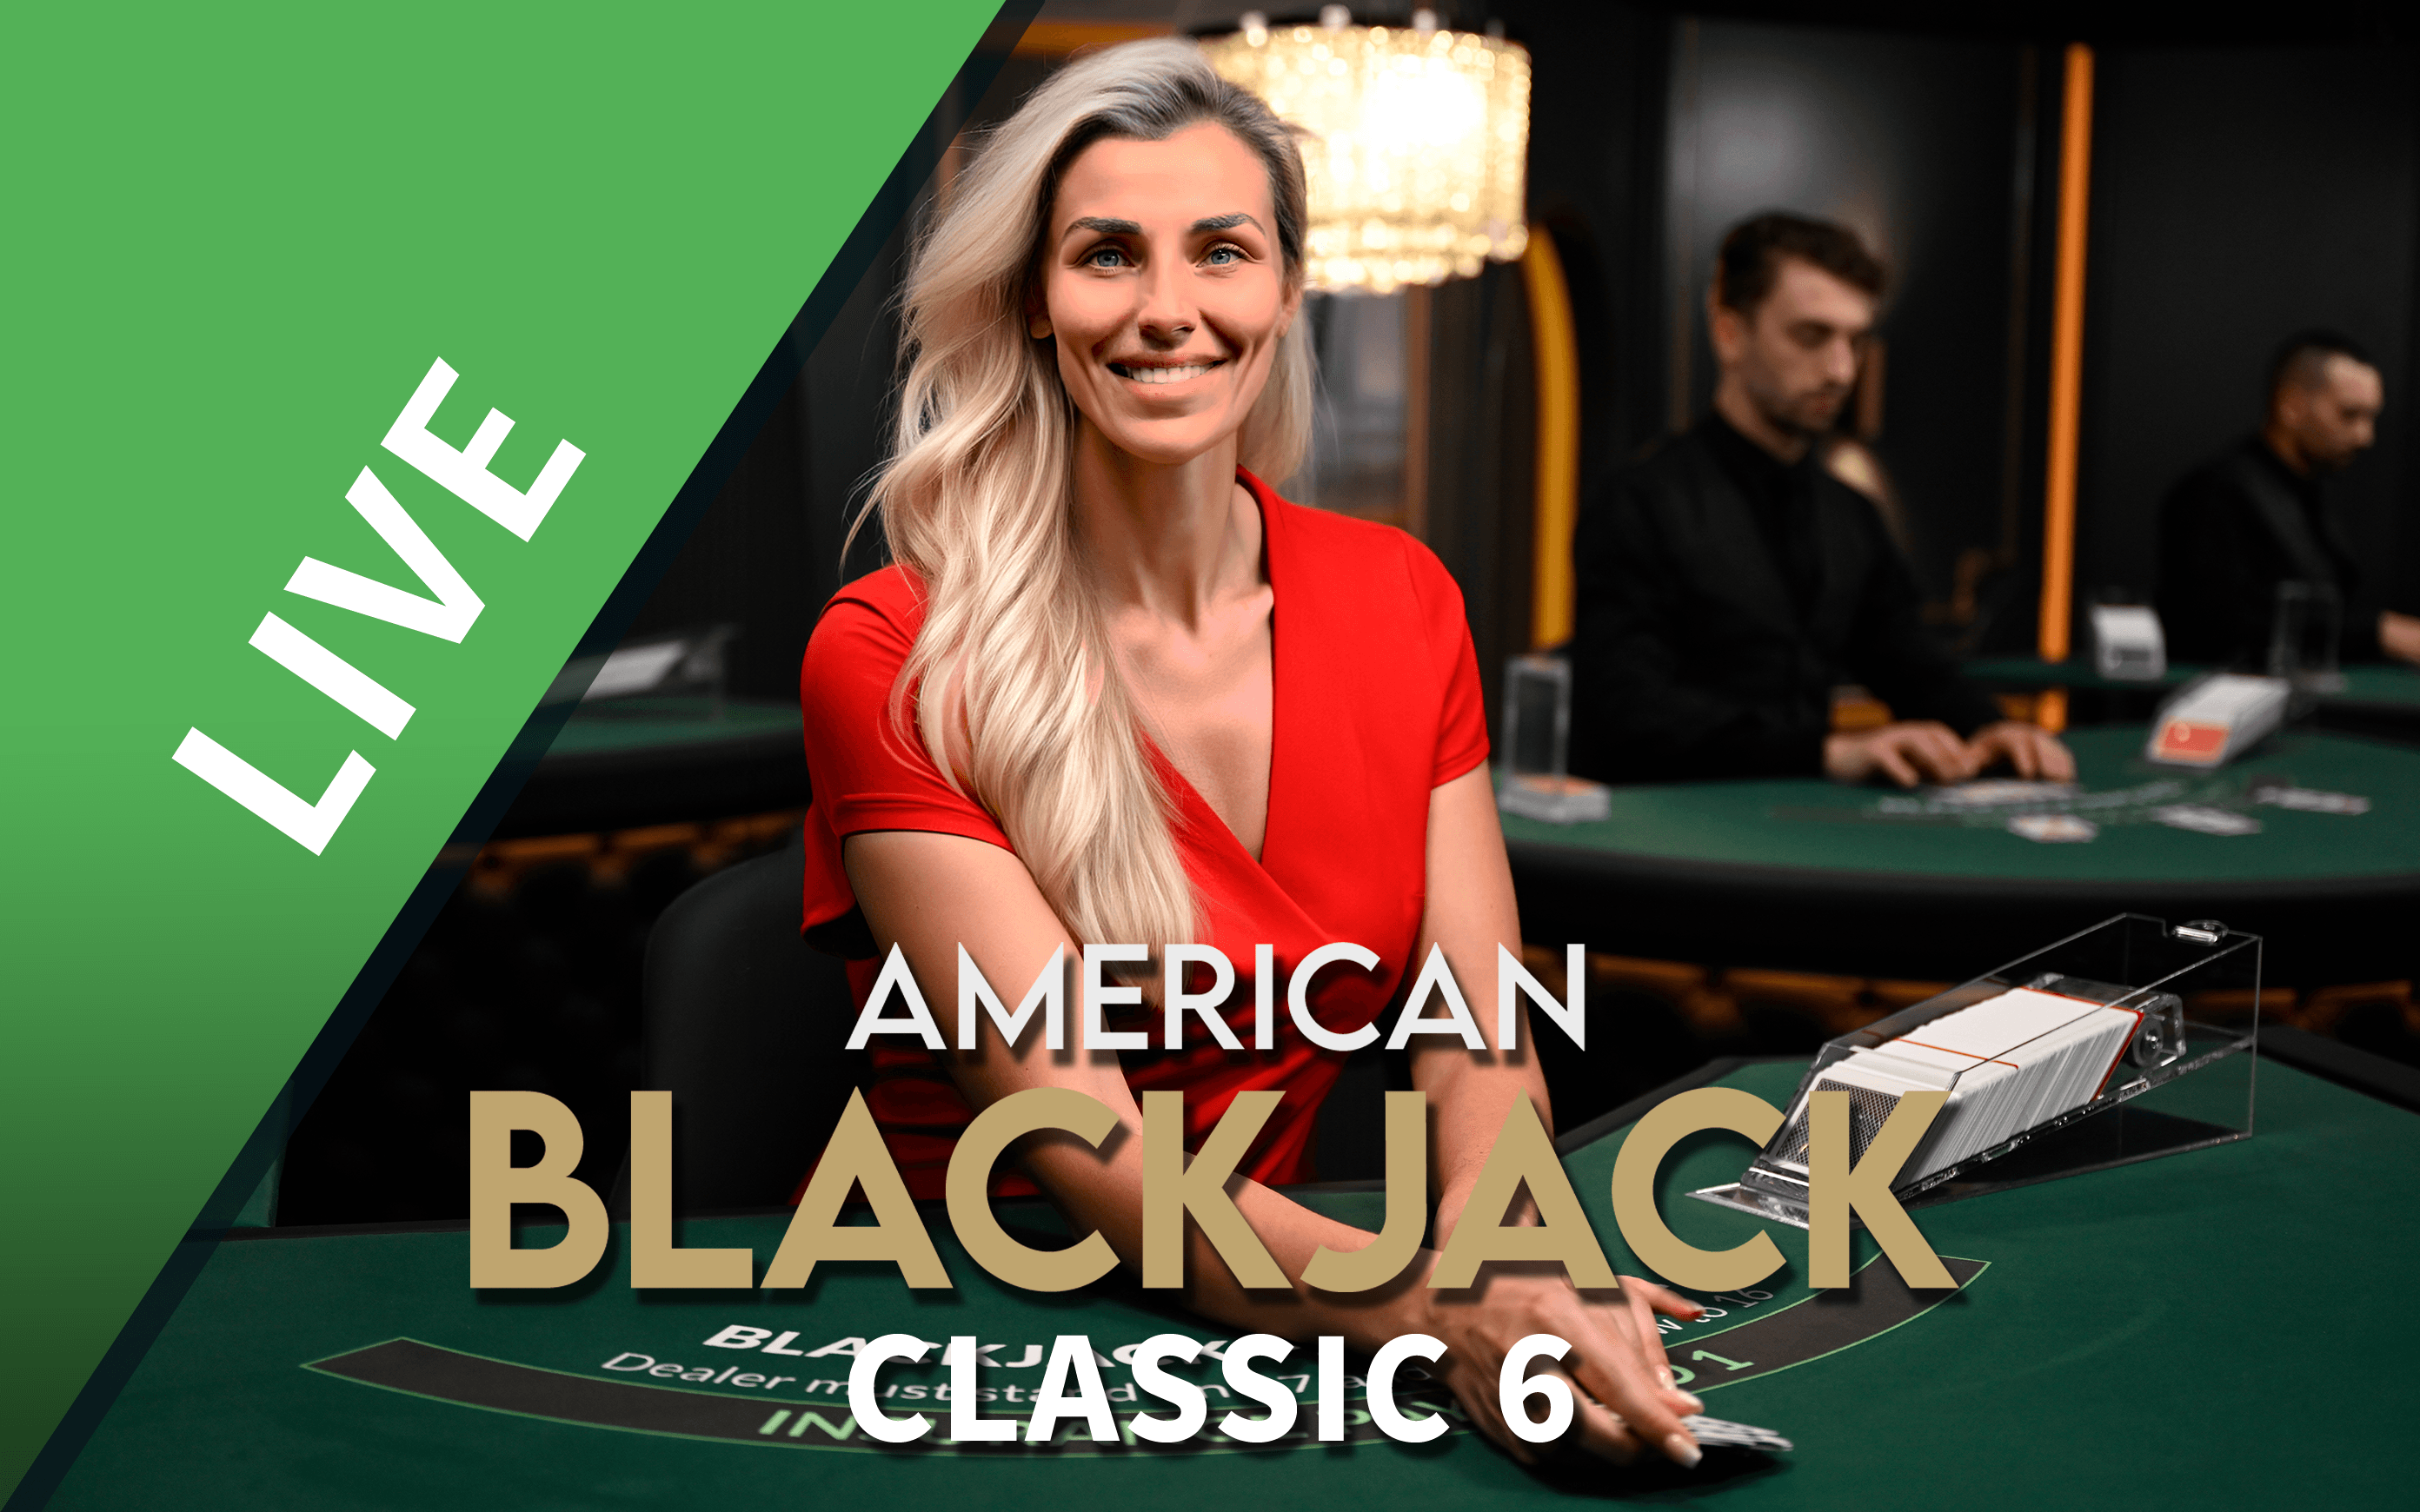 Luaj Blackjack Classic 6 në kazino Starcasino.be në internet